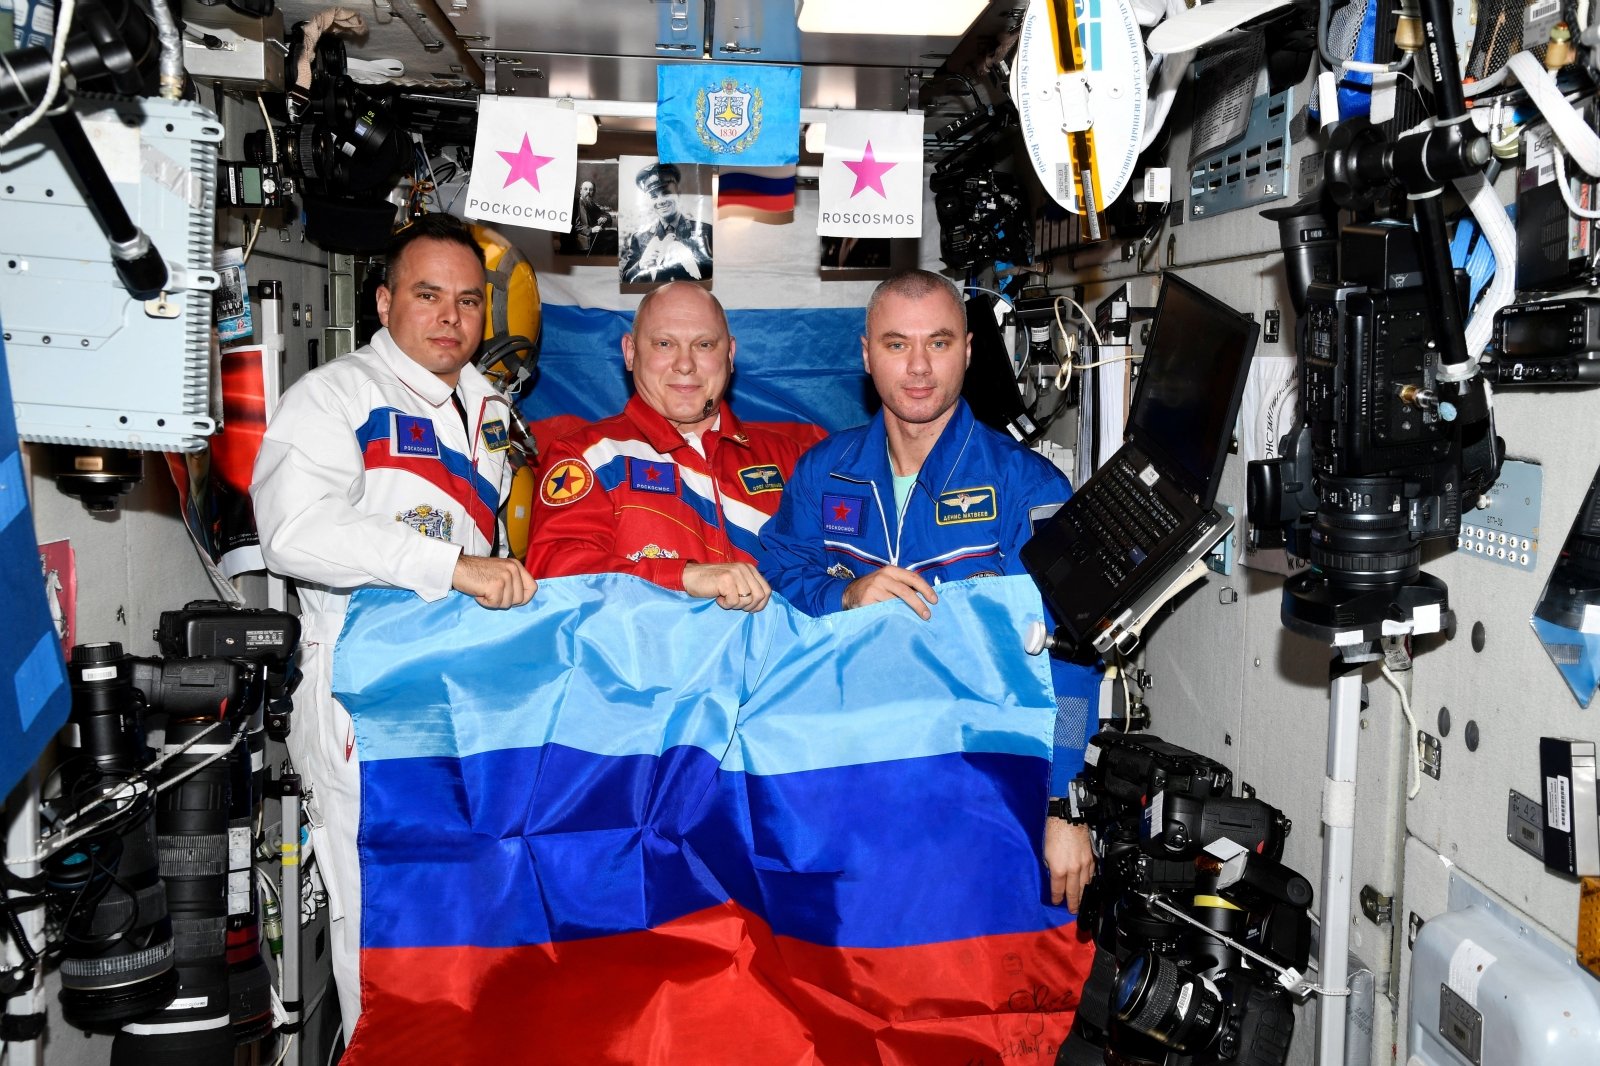 L’astronauta americana era esasperata dal comportamento disgustoso dei russi nello spazio: la ISS è stata utilizzata per la propaganda della guerra in Ucraina – ha volato e issato la bandiera del Donbass